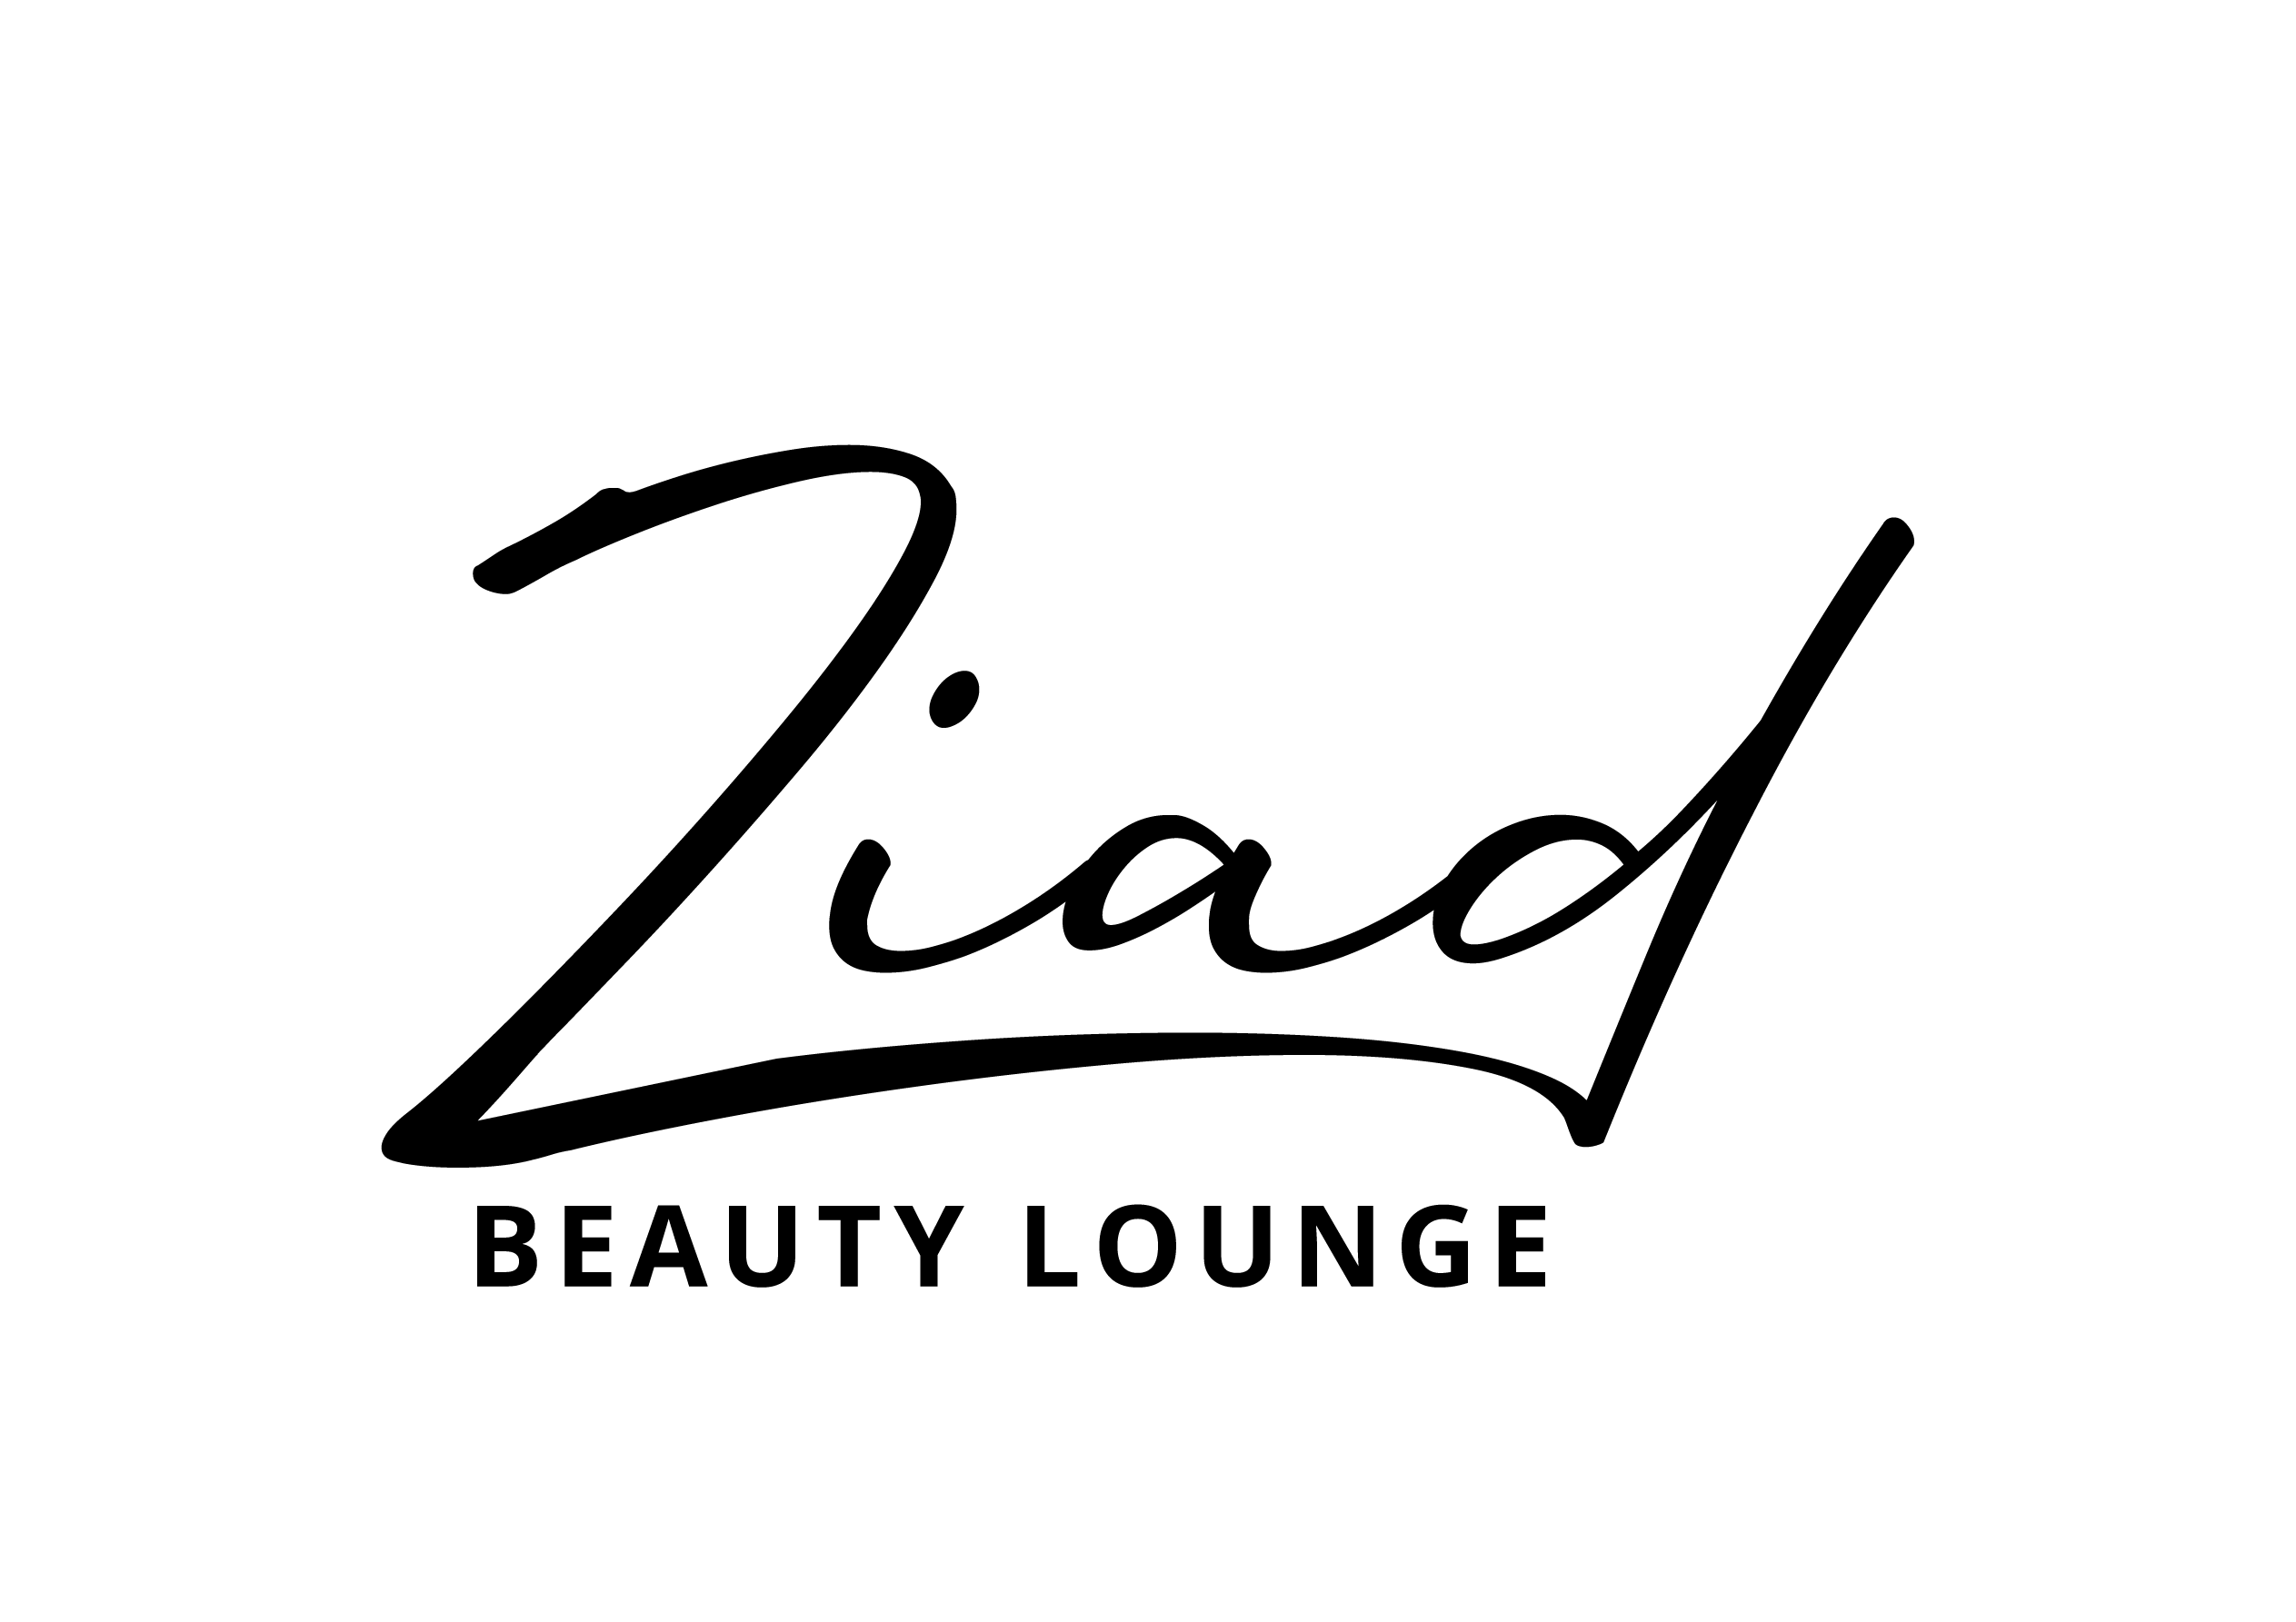 ZBL logo transparent